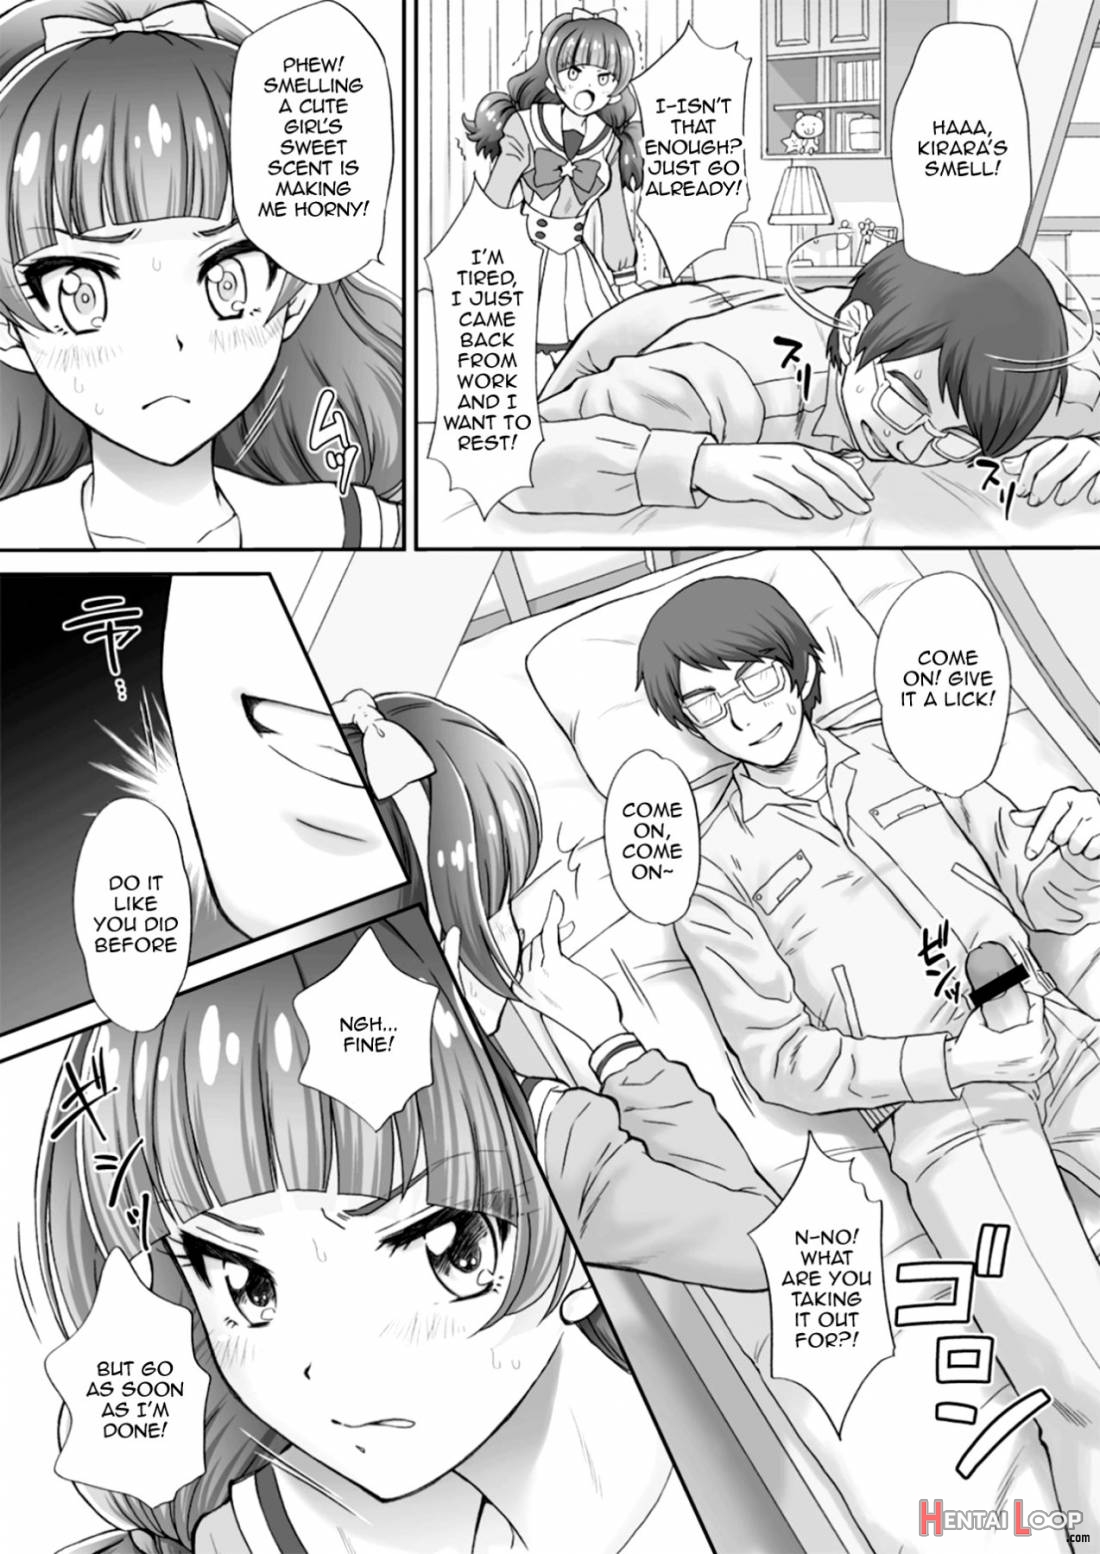 Hoshi no Ohime-sama to Yaritai! 2 page 5